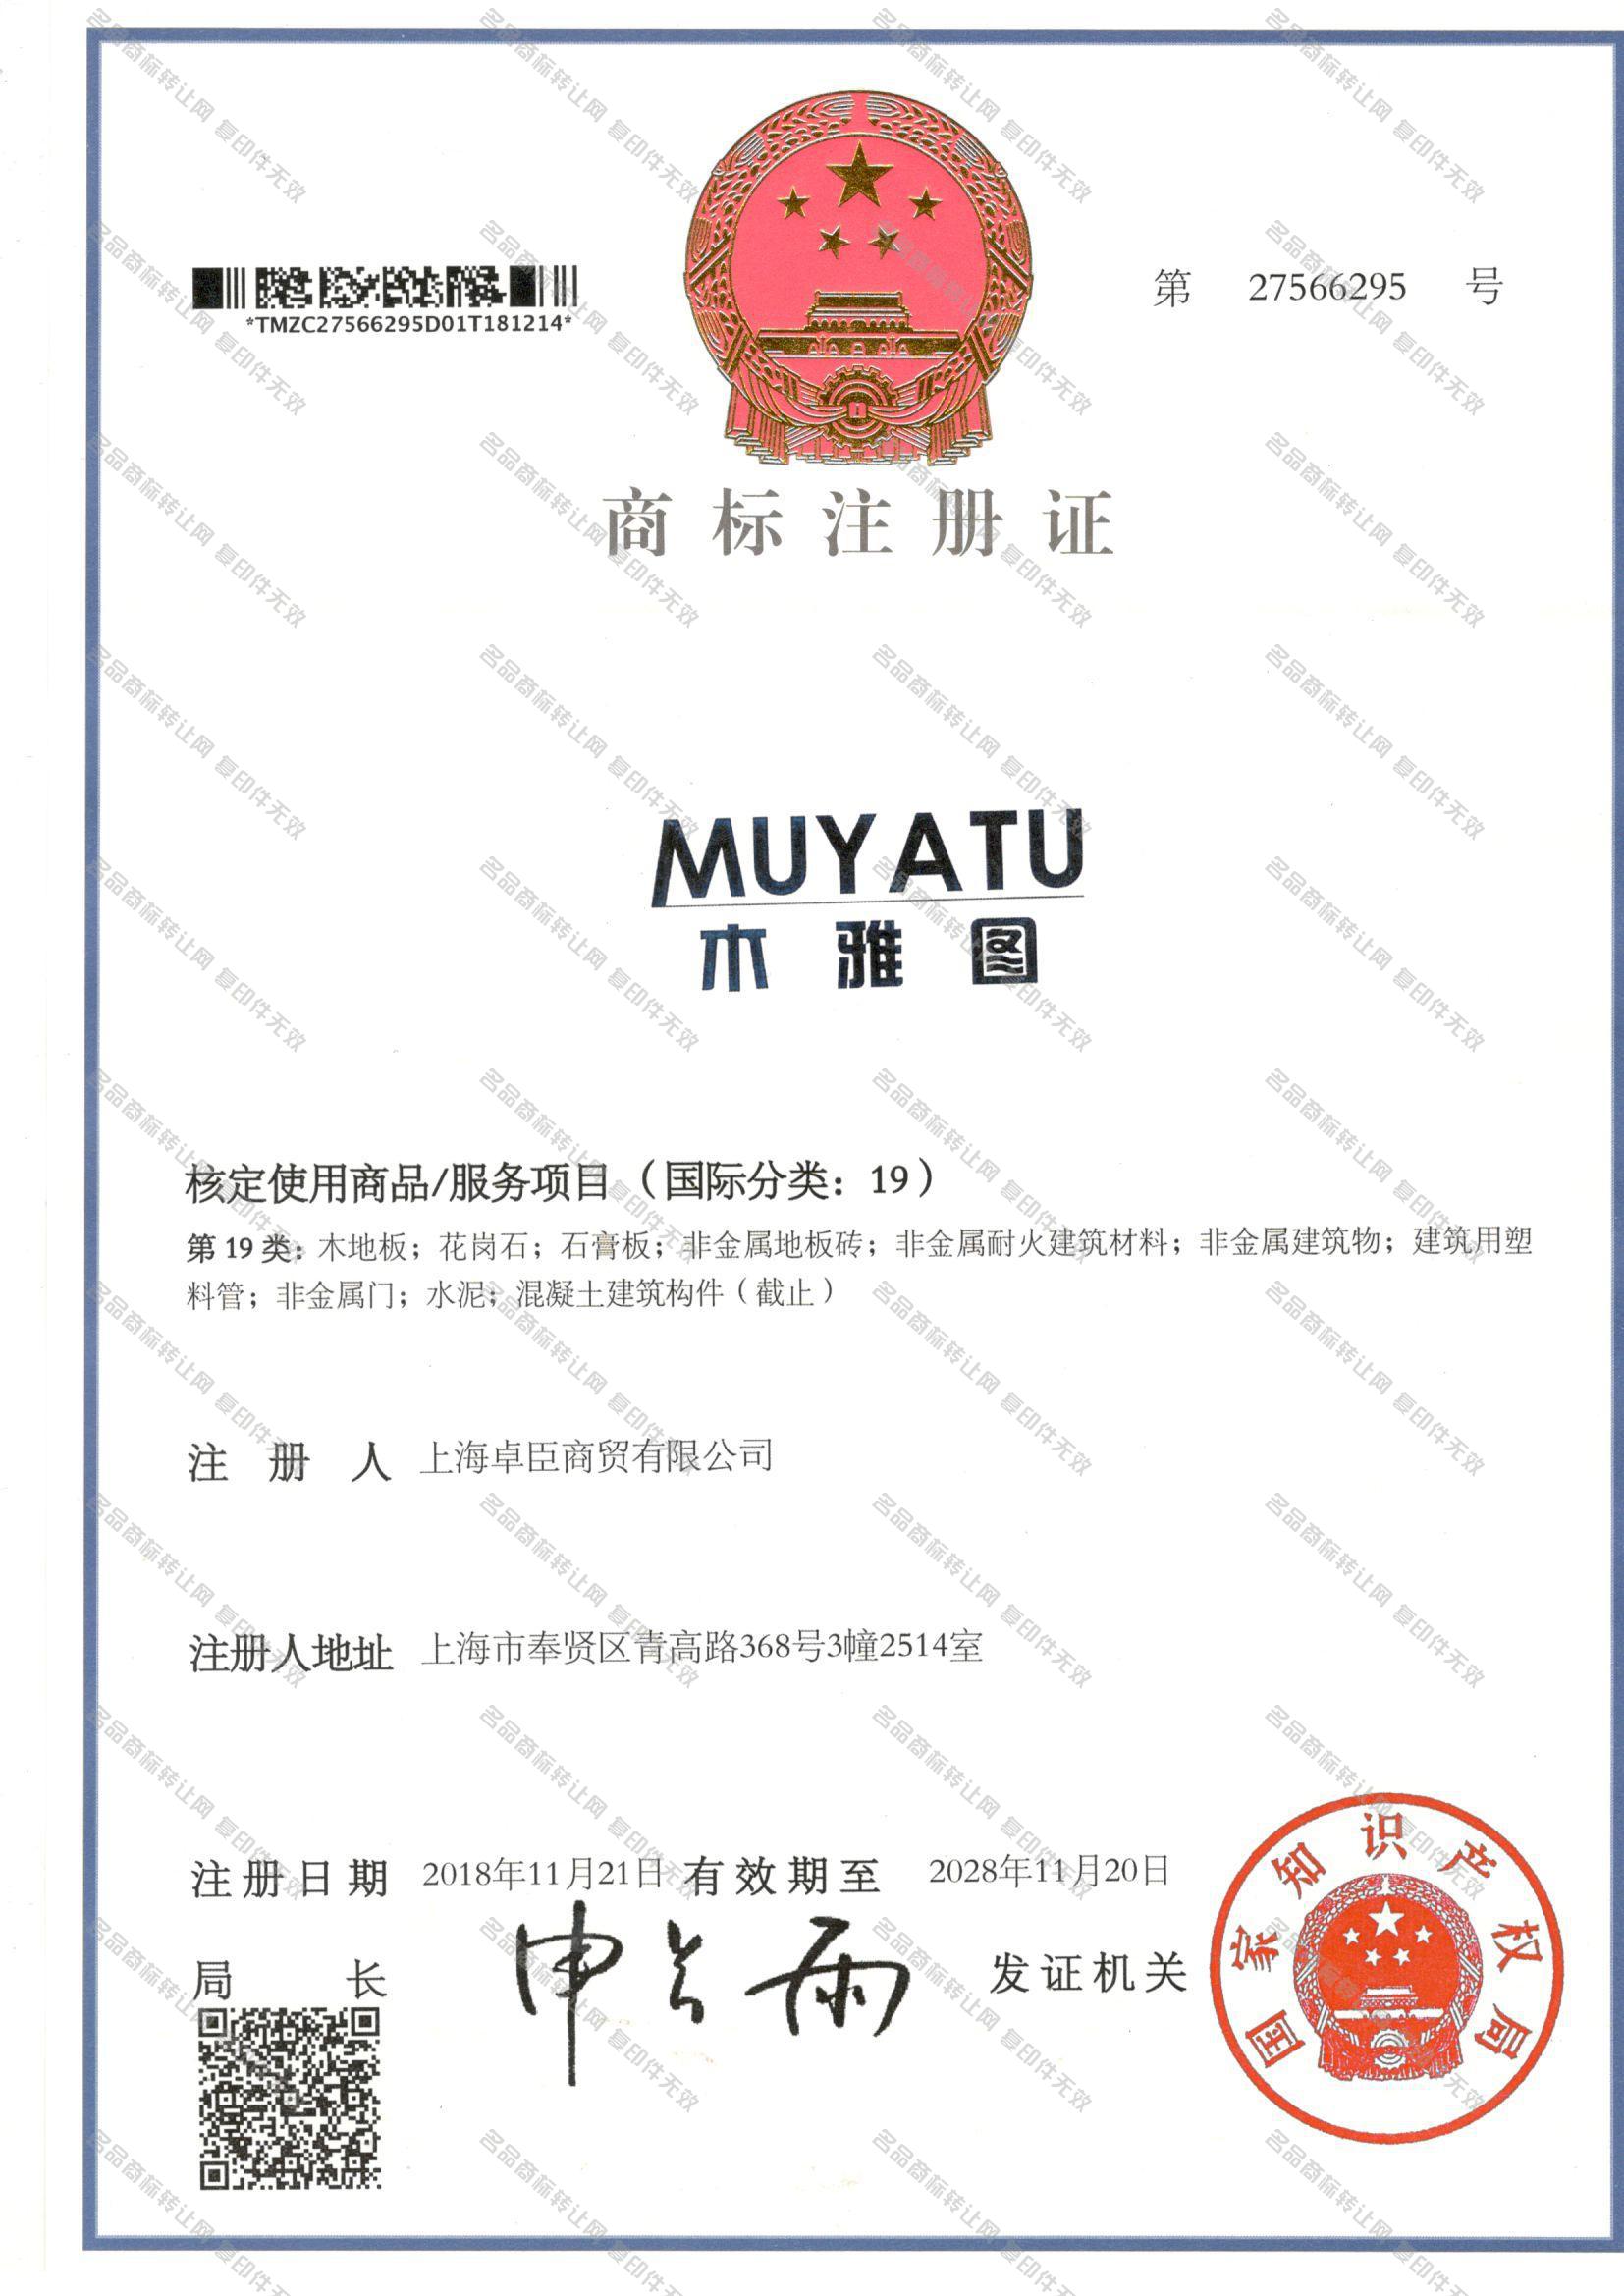 木雅图 MUYATU注册证